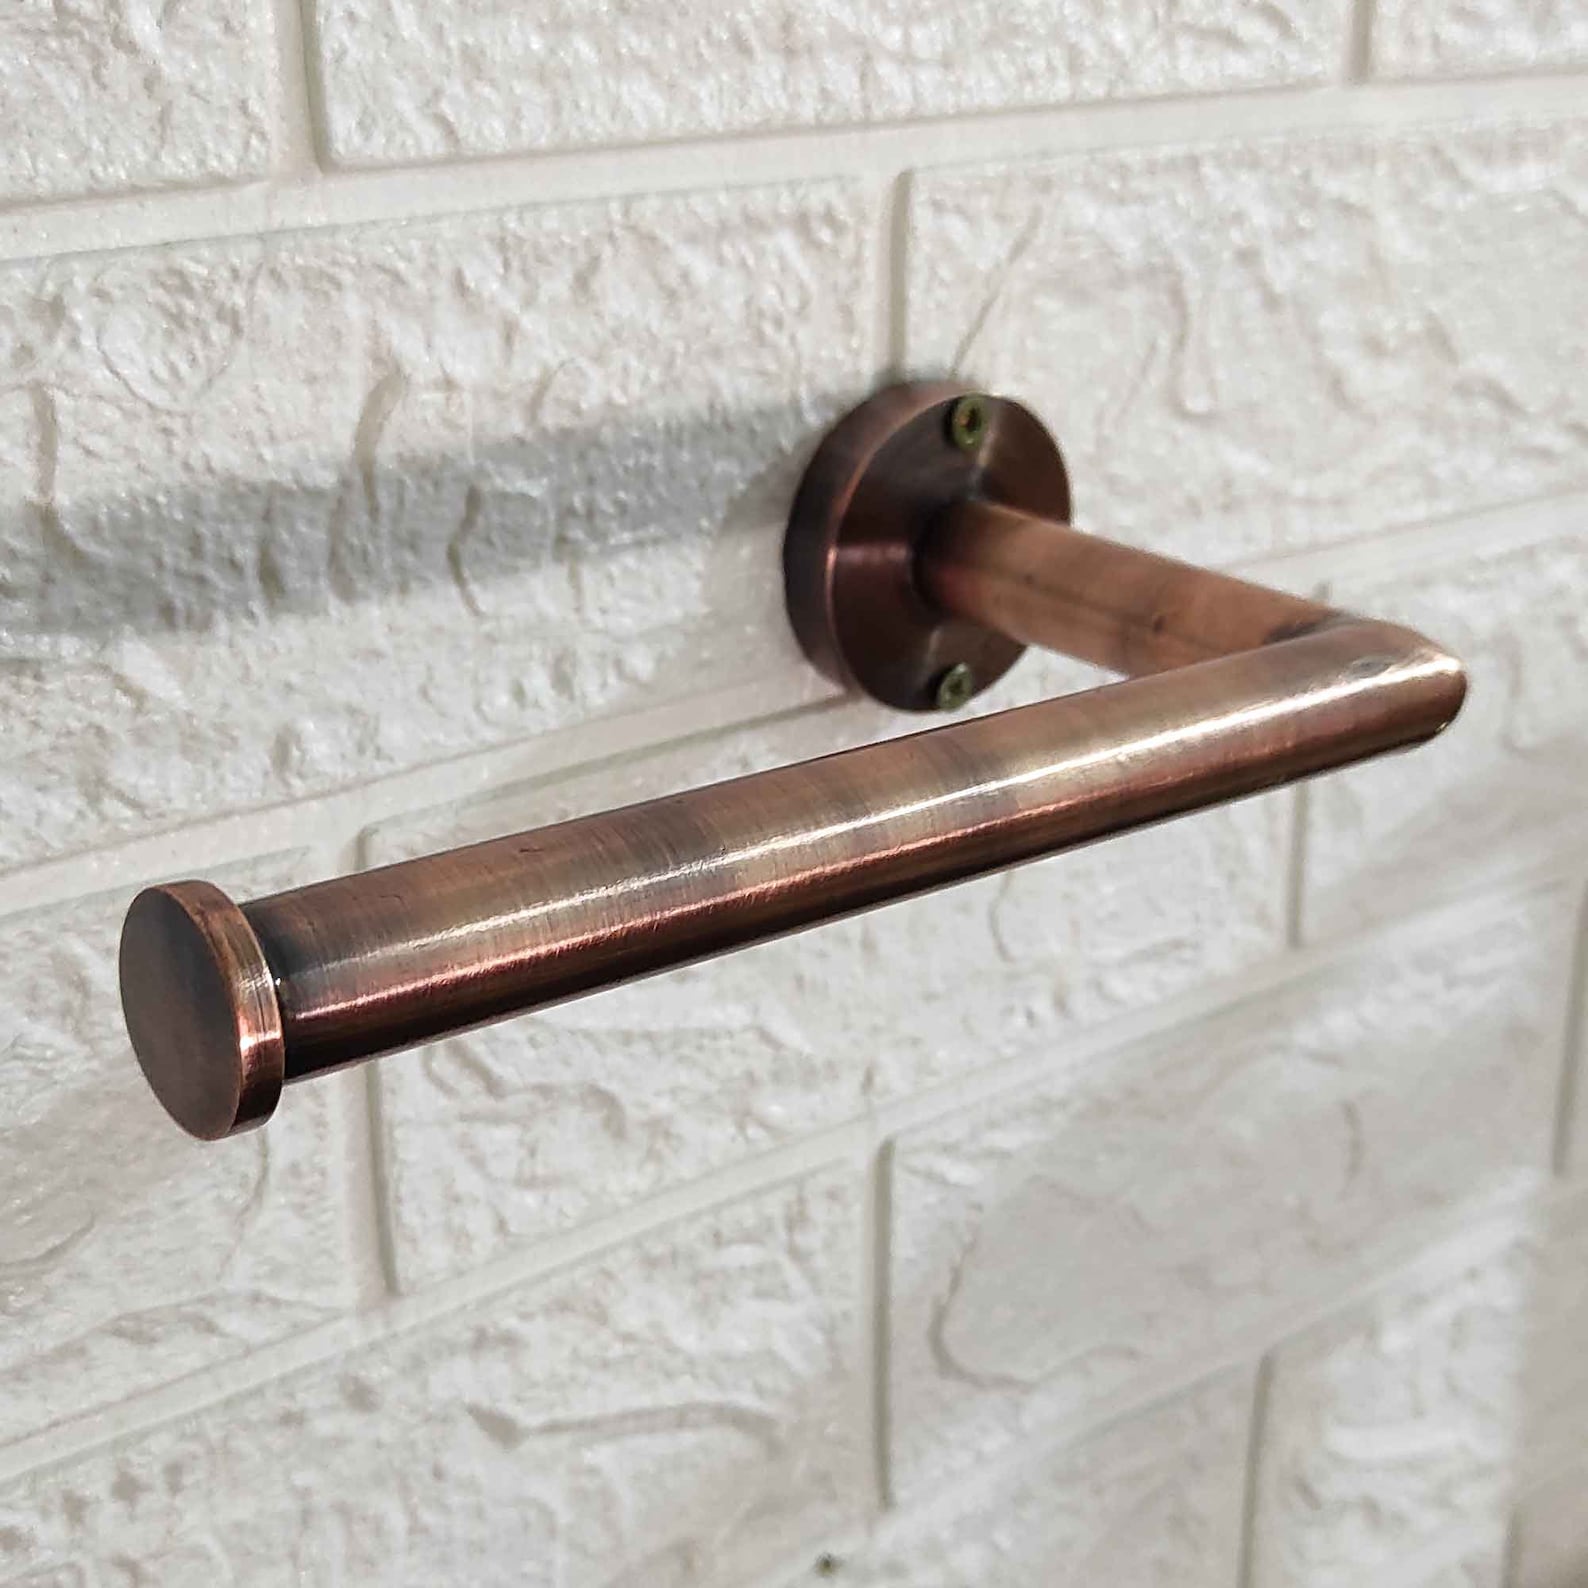 Copper Toilet Paper holder - Toilet paper holder wall mount